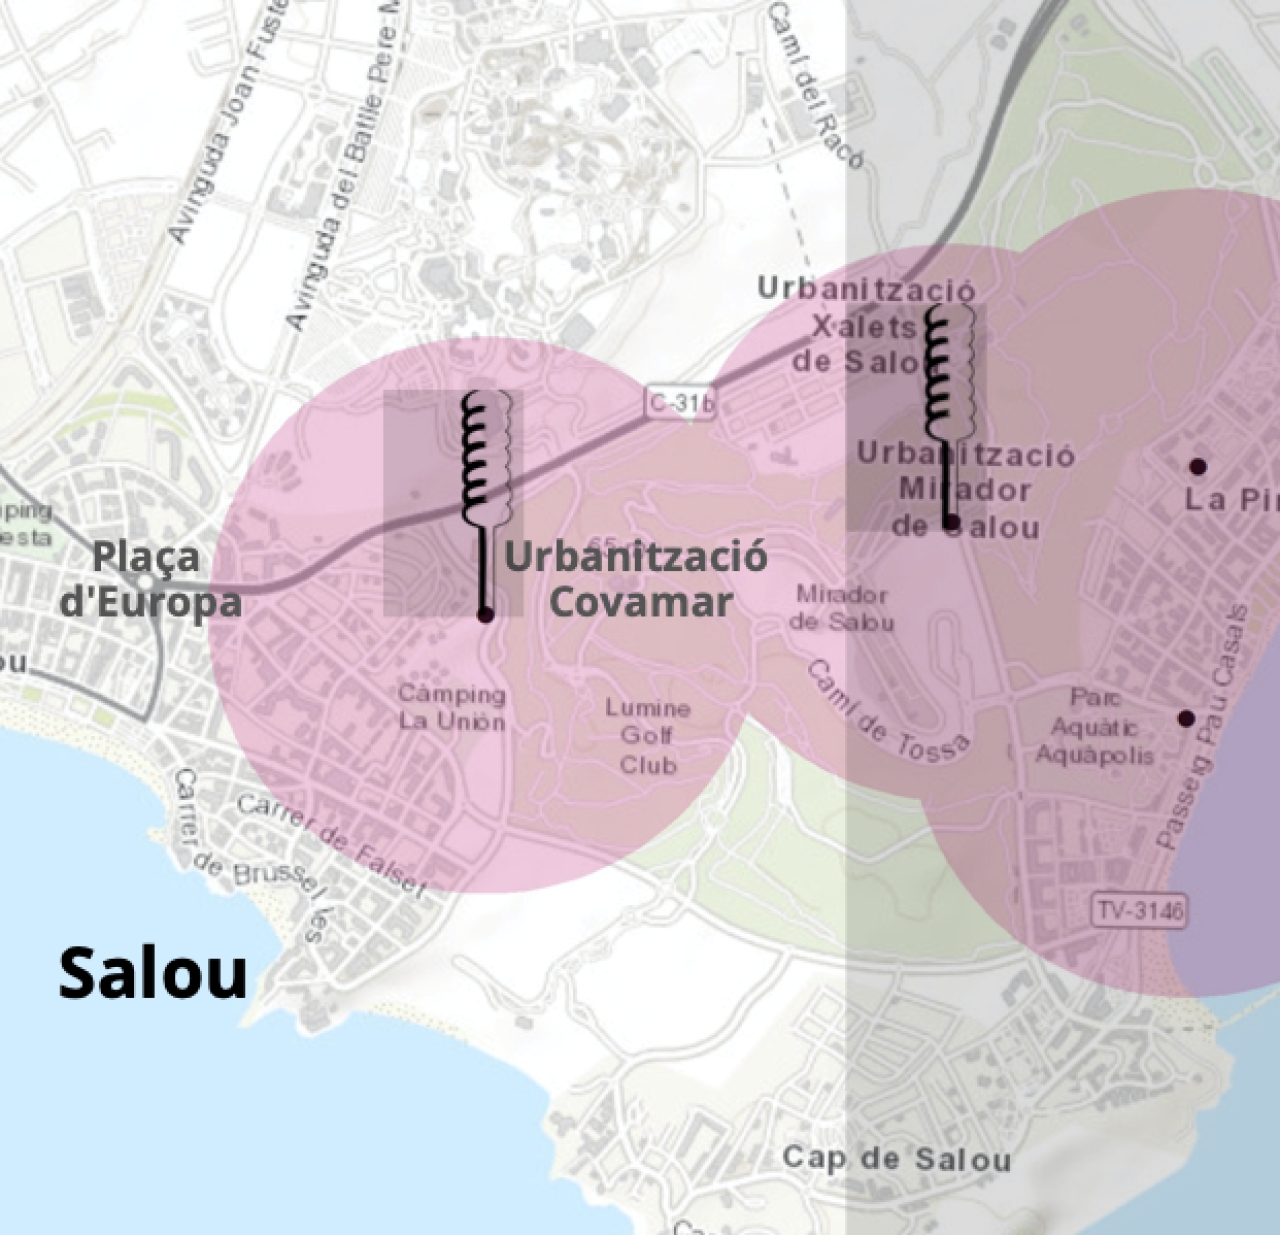 Les urbanitzacions de Xalets de Salou, Covamar i Mirador de Salou estan incloses en l&#039;àmbit d&#039;actuació del simulacre del 2 de novembre